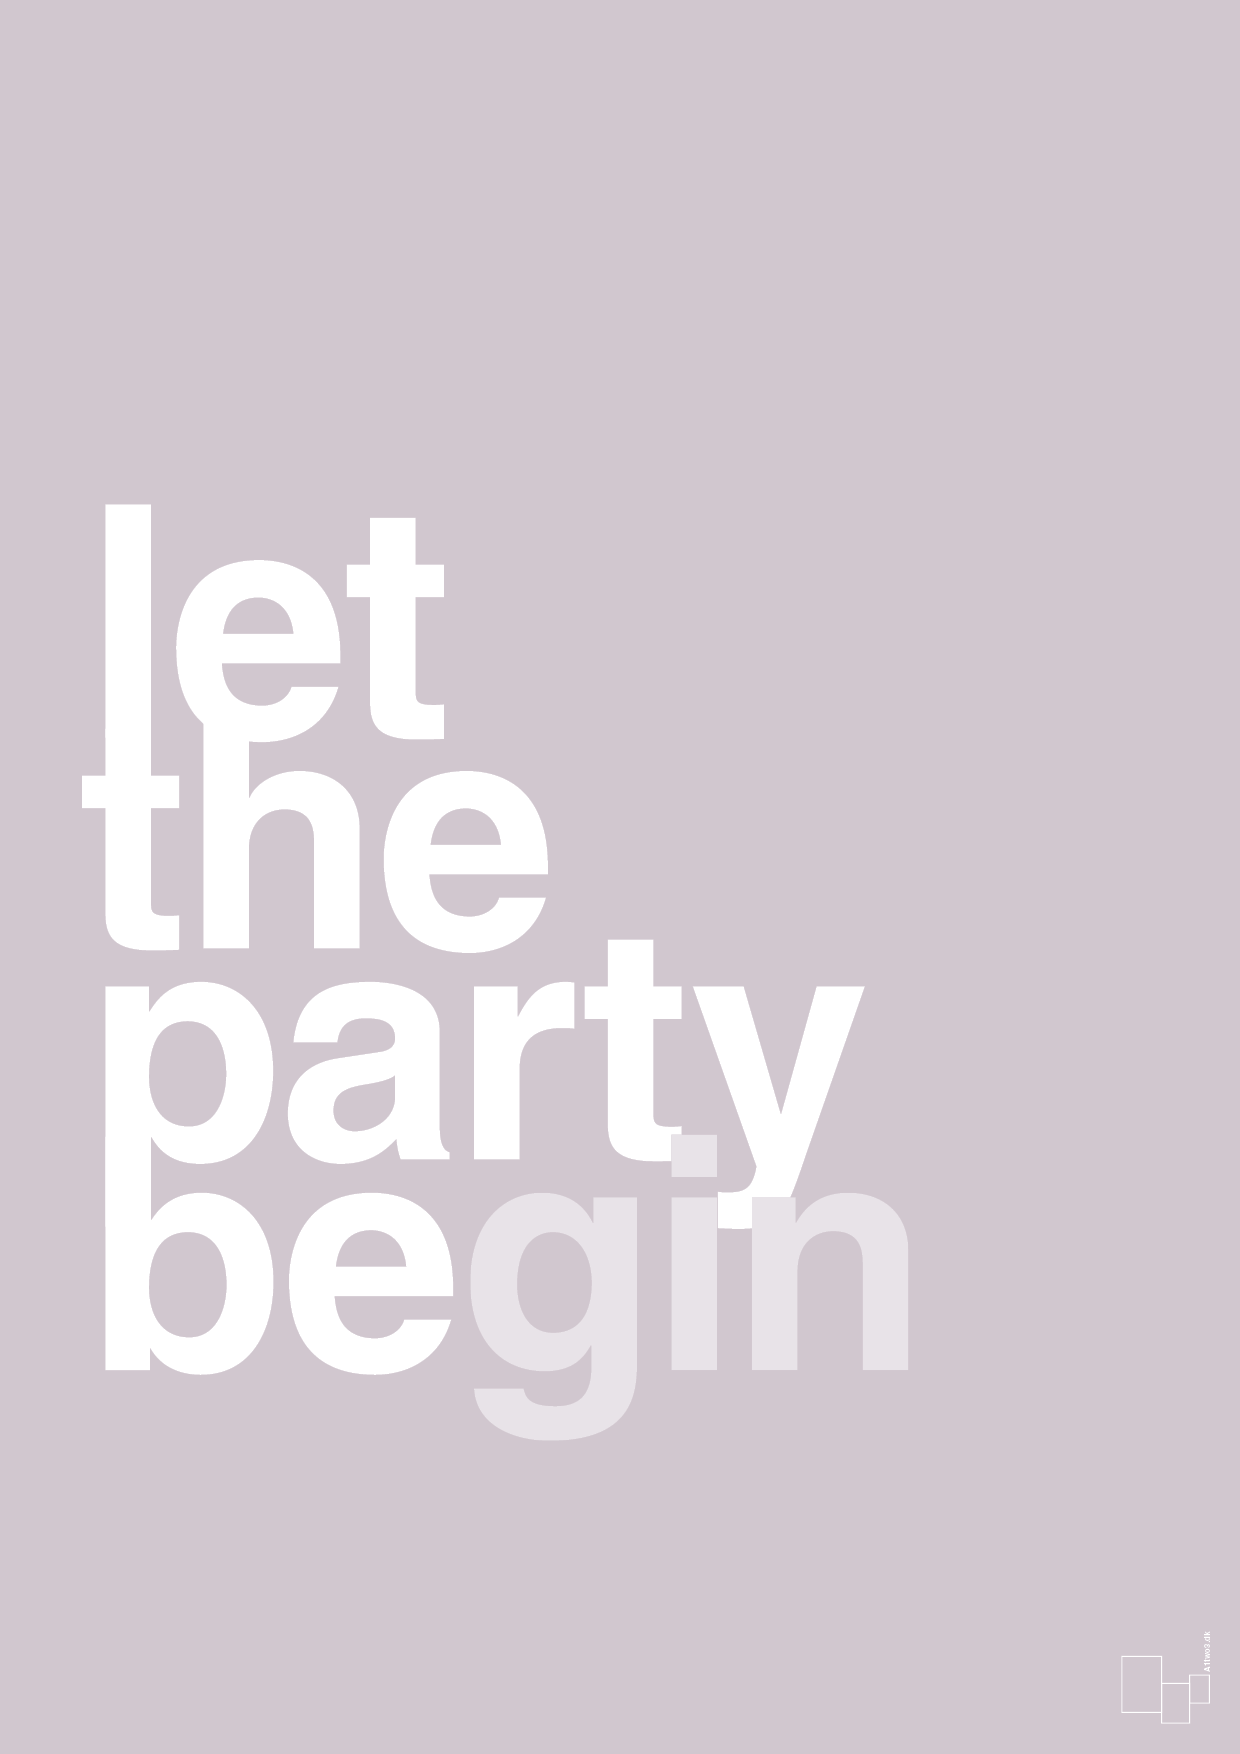 let the party begin - Plakat med Ordsprog i Dusty Lilac